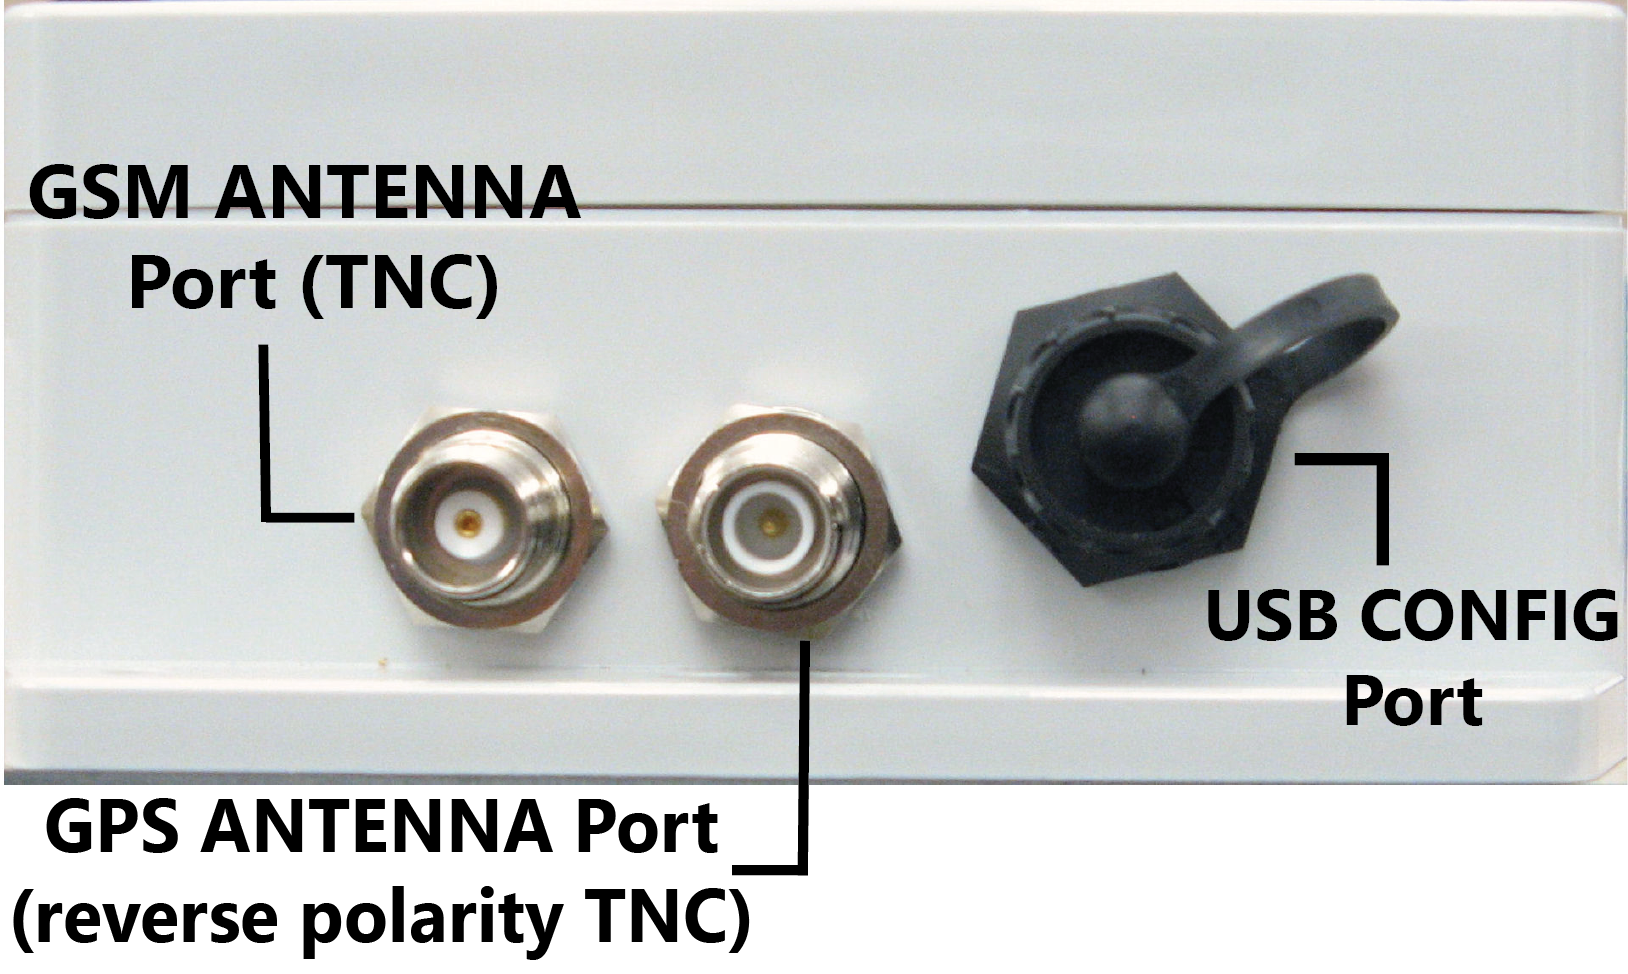 RM4150/RM4151 Enclosure Connectors - Antenna and USB Config